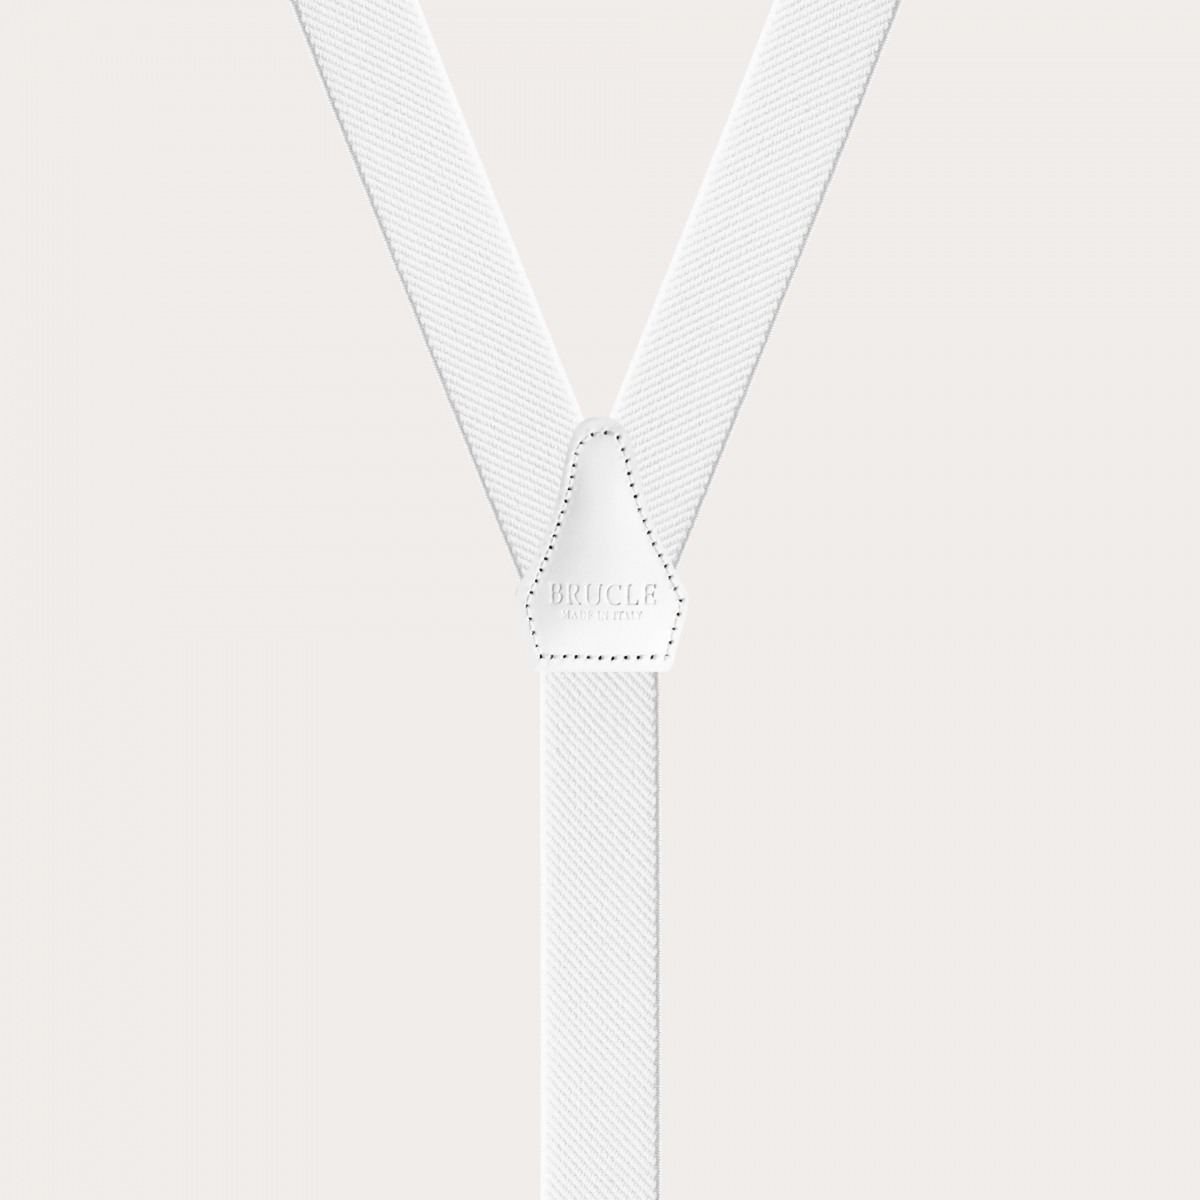 BRUCLE Elegante elastische Hosenträger mit doppeltem Verwendungszweck, Weiß